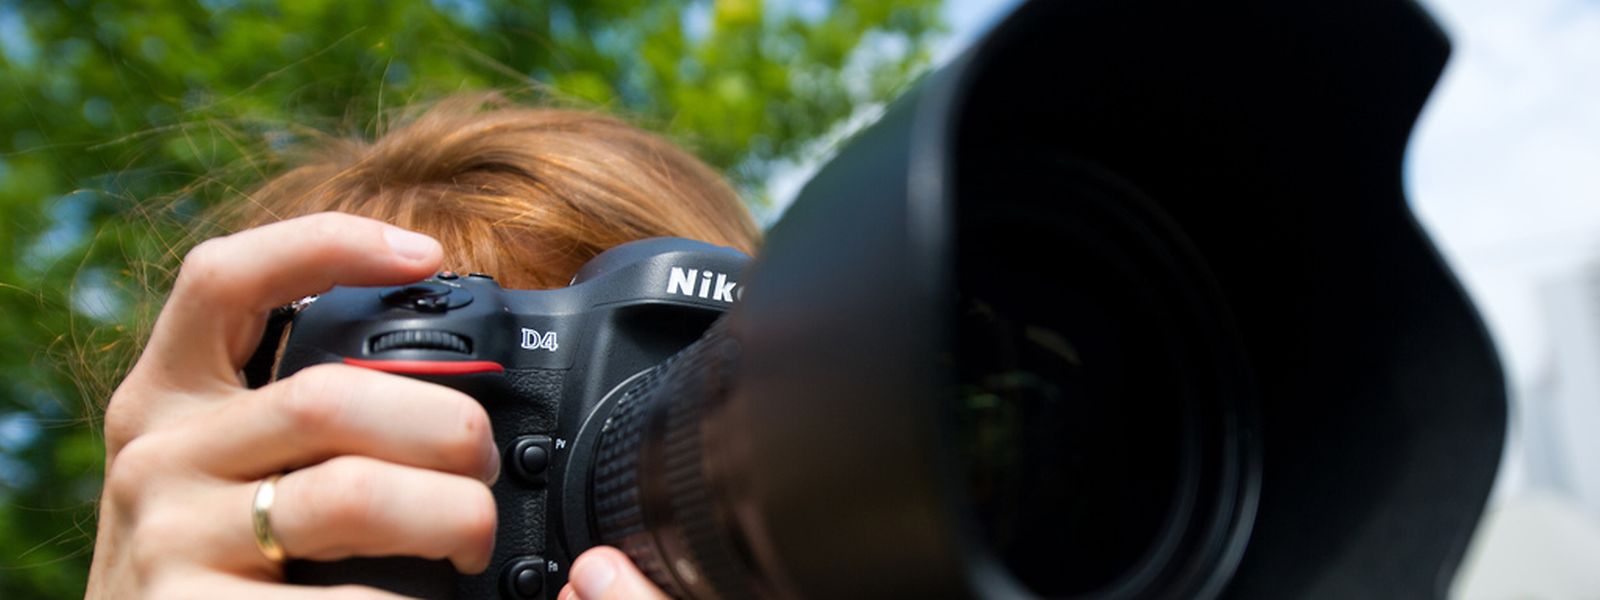 Bei Profis und ambitionierten Fotografen sind Spiegelreflexkameras beliebt - ihr Gewicht weniger.